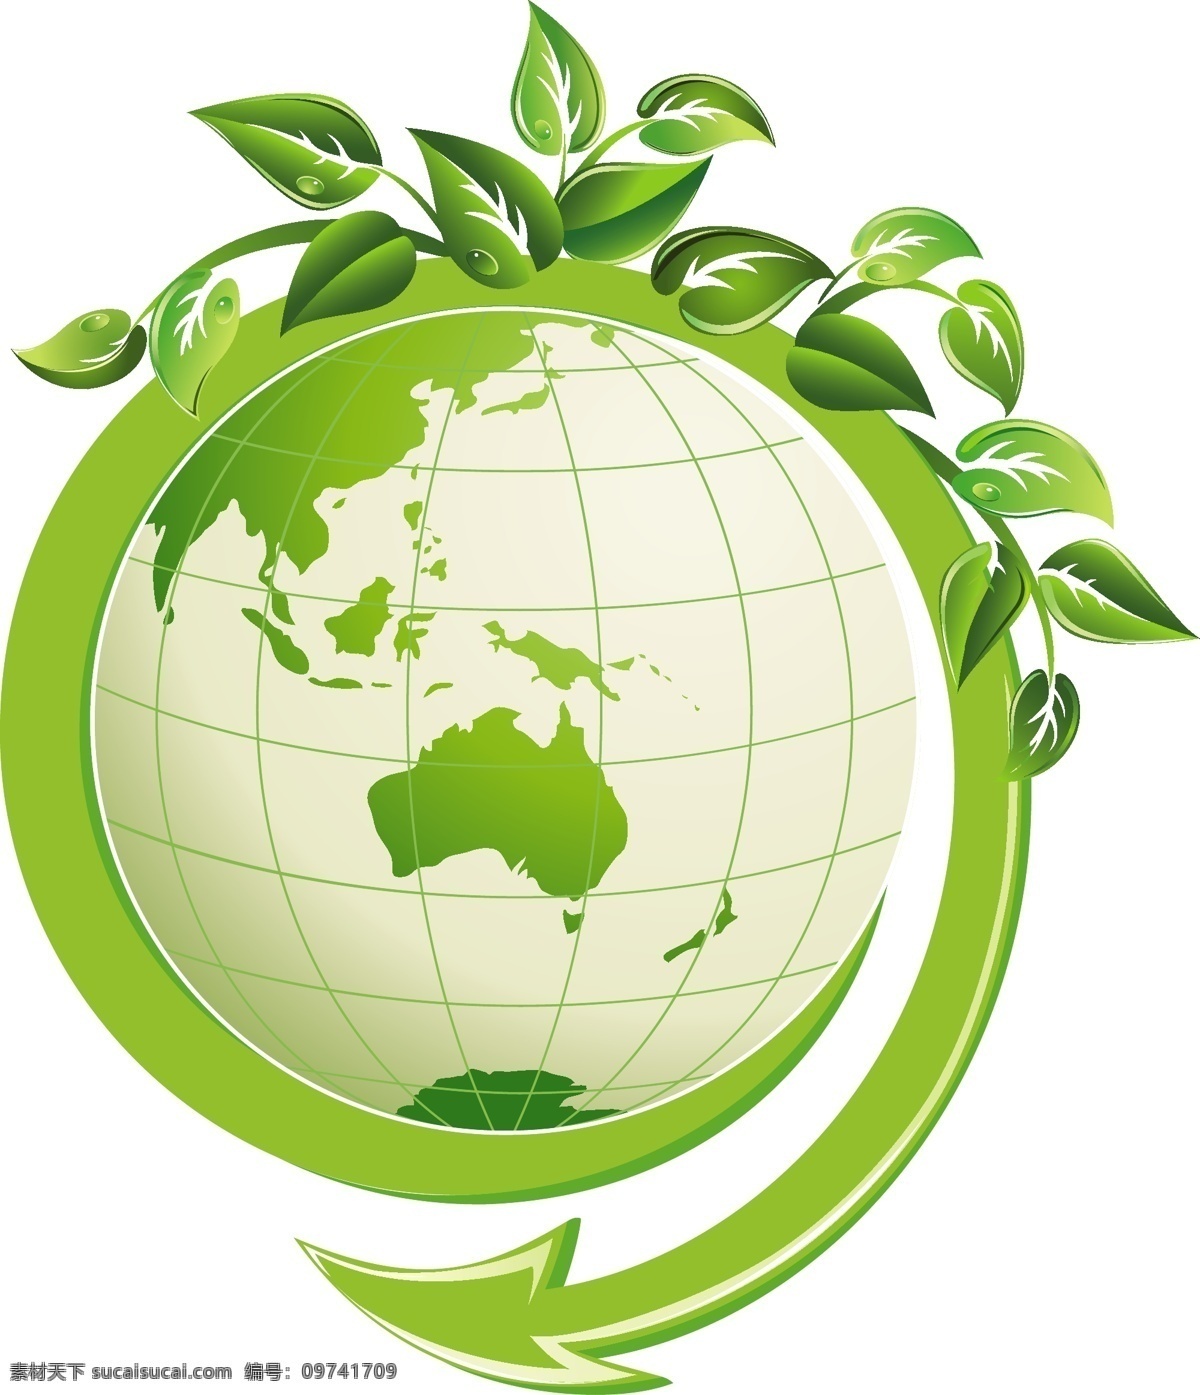 矢量 地球 绿叶 ai矢量 保护 绿色 藤 藤蔓 叶子 地球保护日 地球保护 保护日 矢量图 日常生活